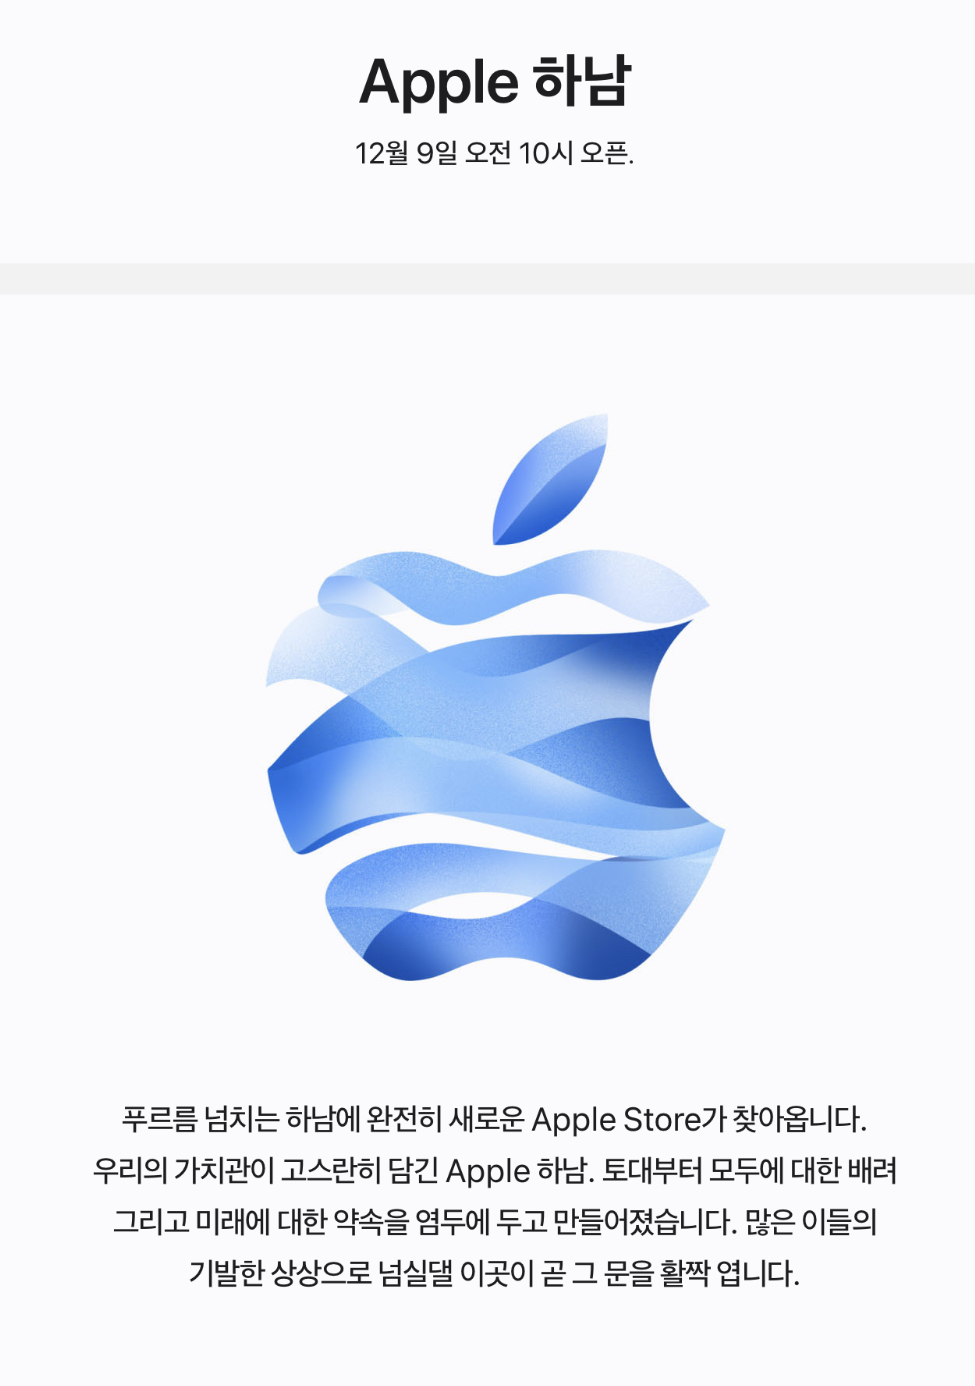 Тут написано, что в новом южнокорейском Apple Store с 9 декабря будут рады видеть покупателей массовых партий iPhone с предактивом на границе для беспошлинного провоза в другую страну, а также устройств, которые имеют ограничения в Локаторе